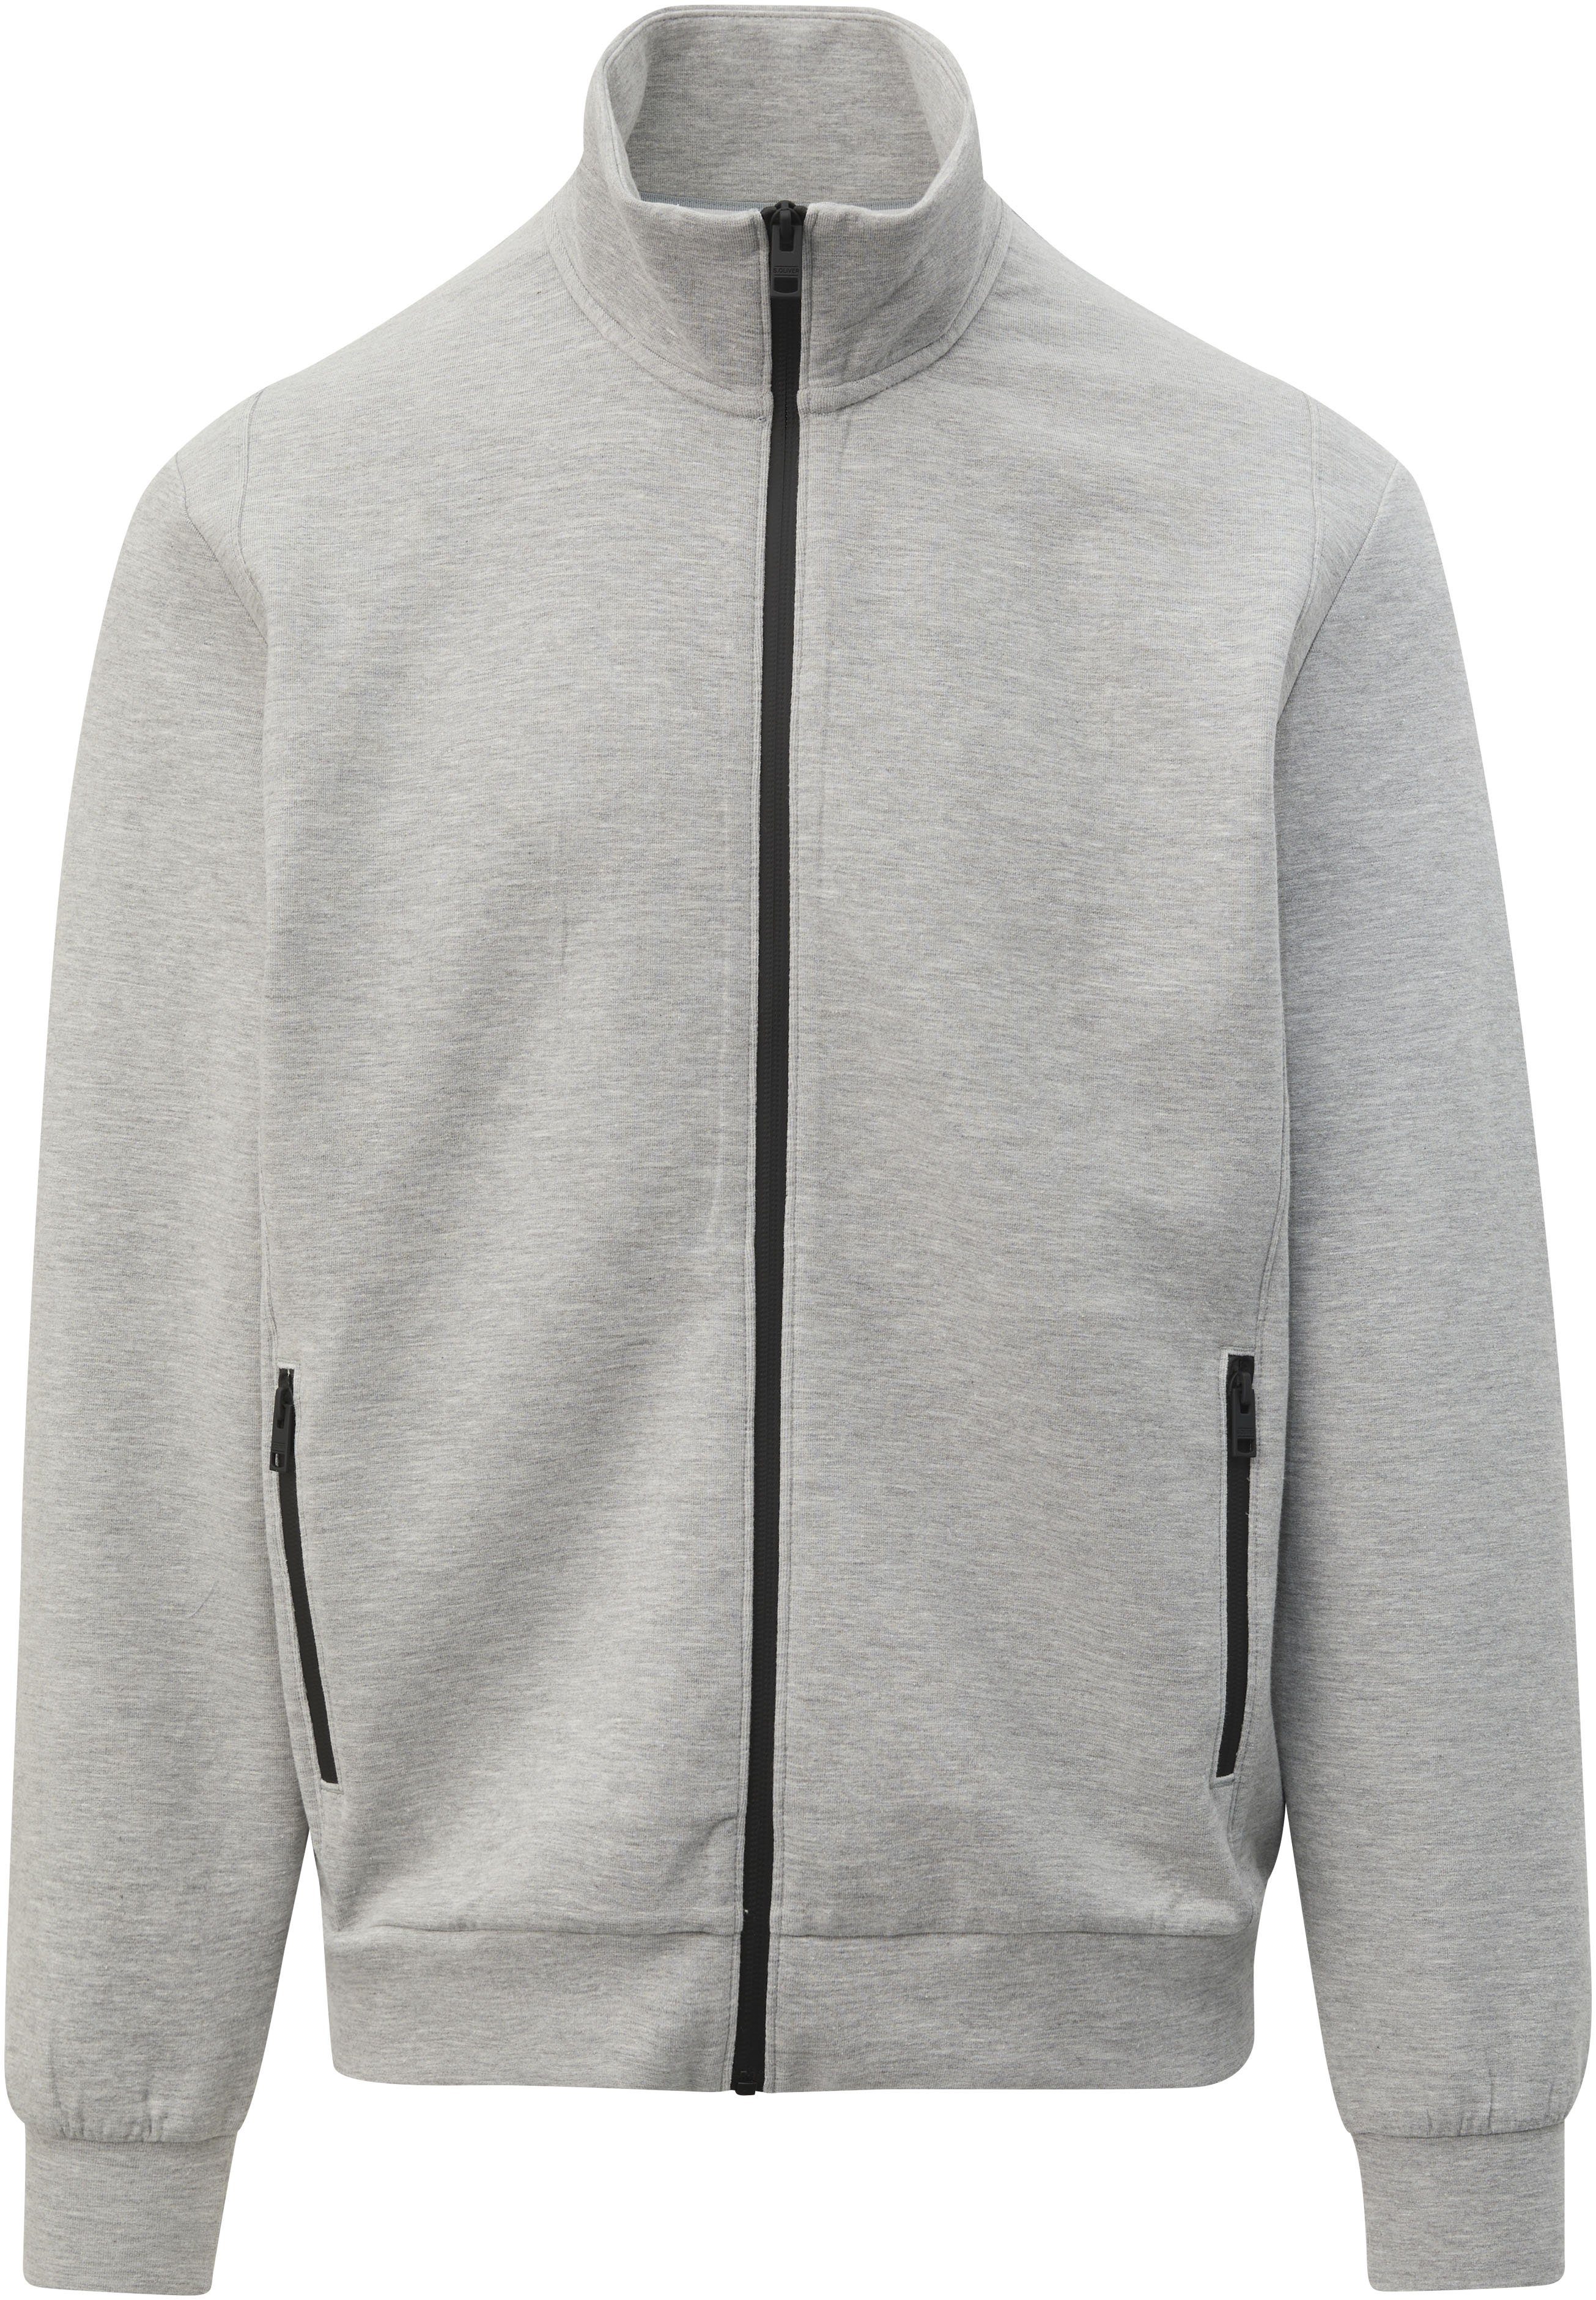 s.Oliver Sweater mit Reißverschlusstaschen grey/black